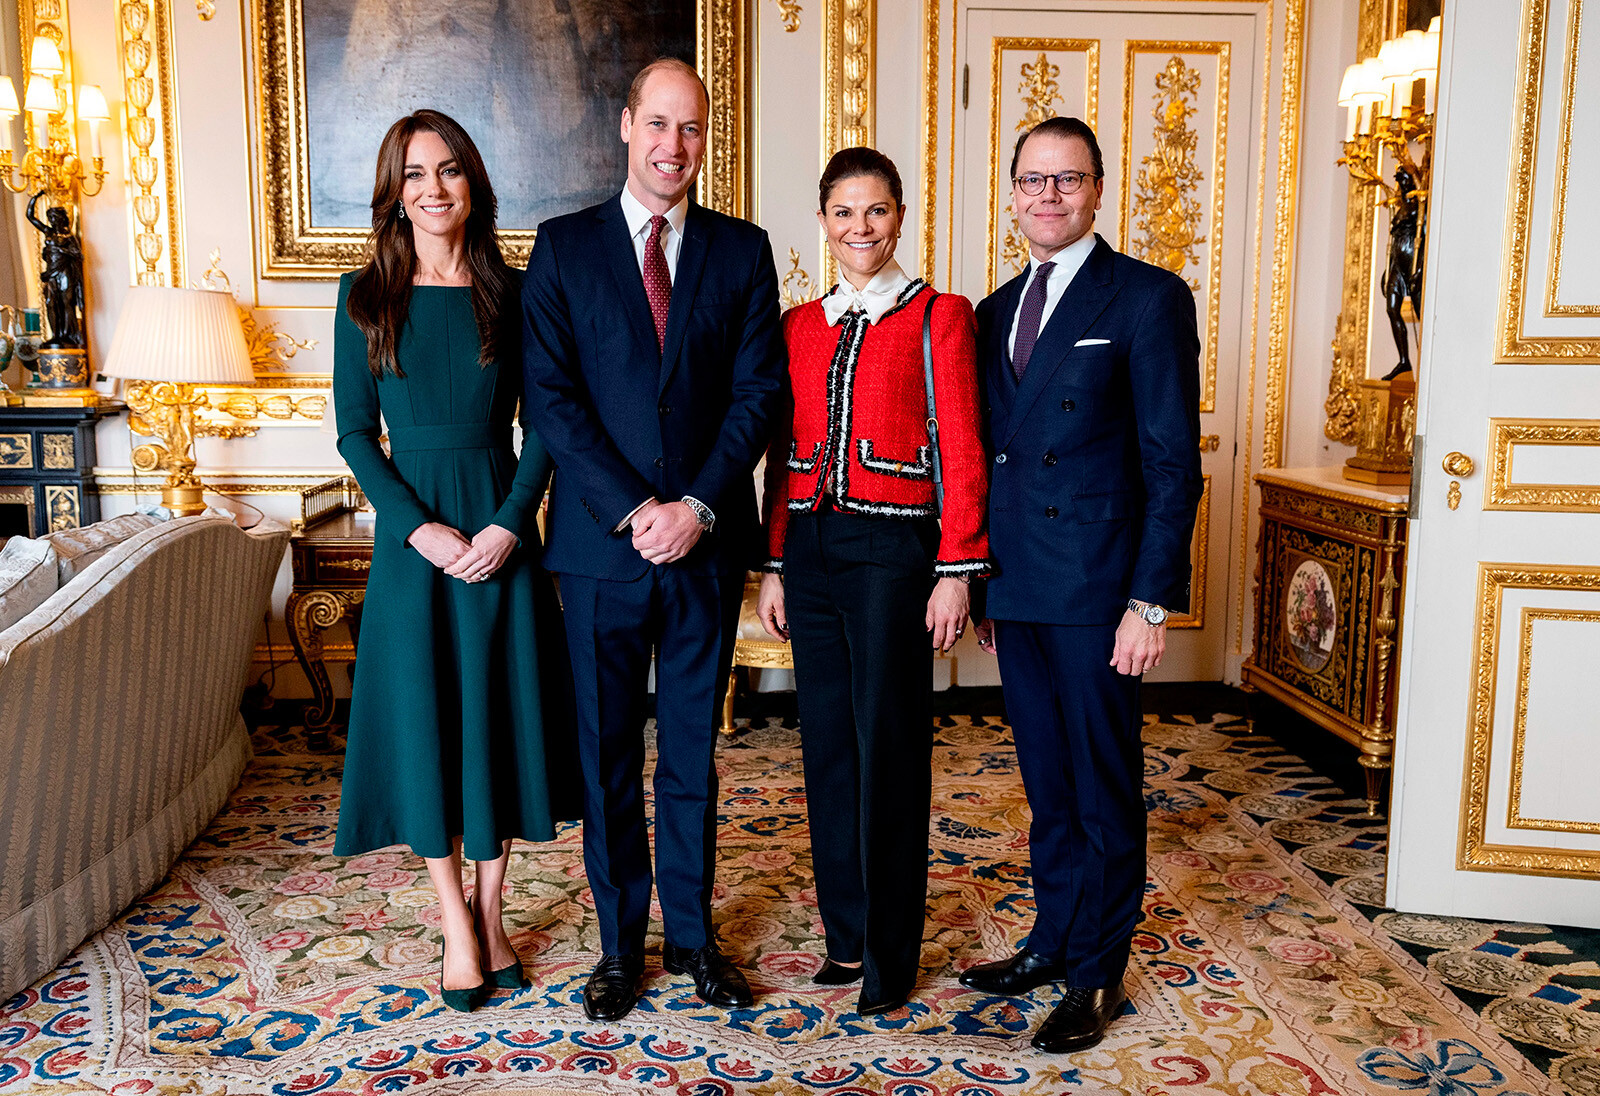 Принц Уильям и Кейт Миддлтон&nbsp;с кронпринцессой Викторией и принцем Даниэлем Шведским во время встречи в Виндзорском замке в Англии